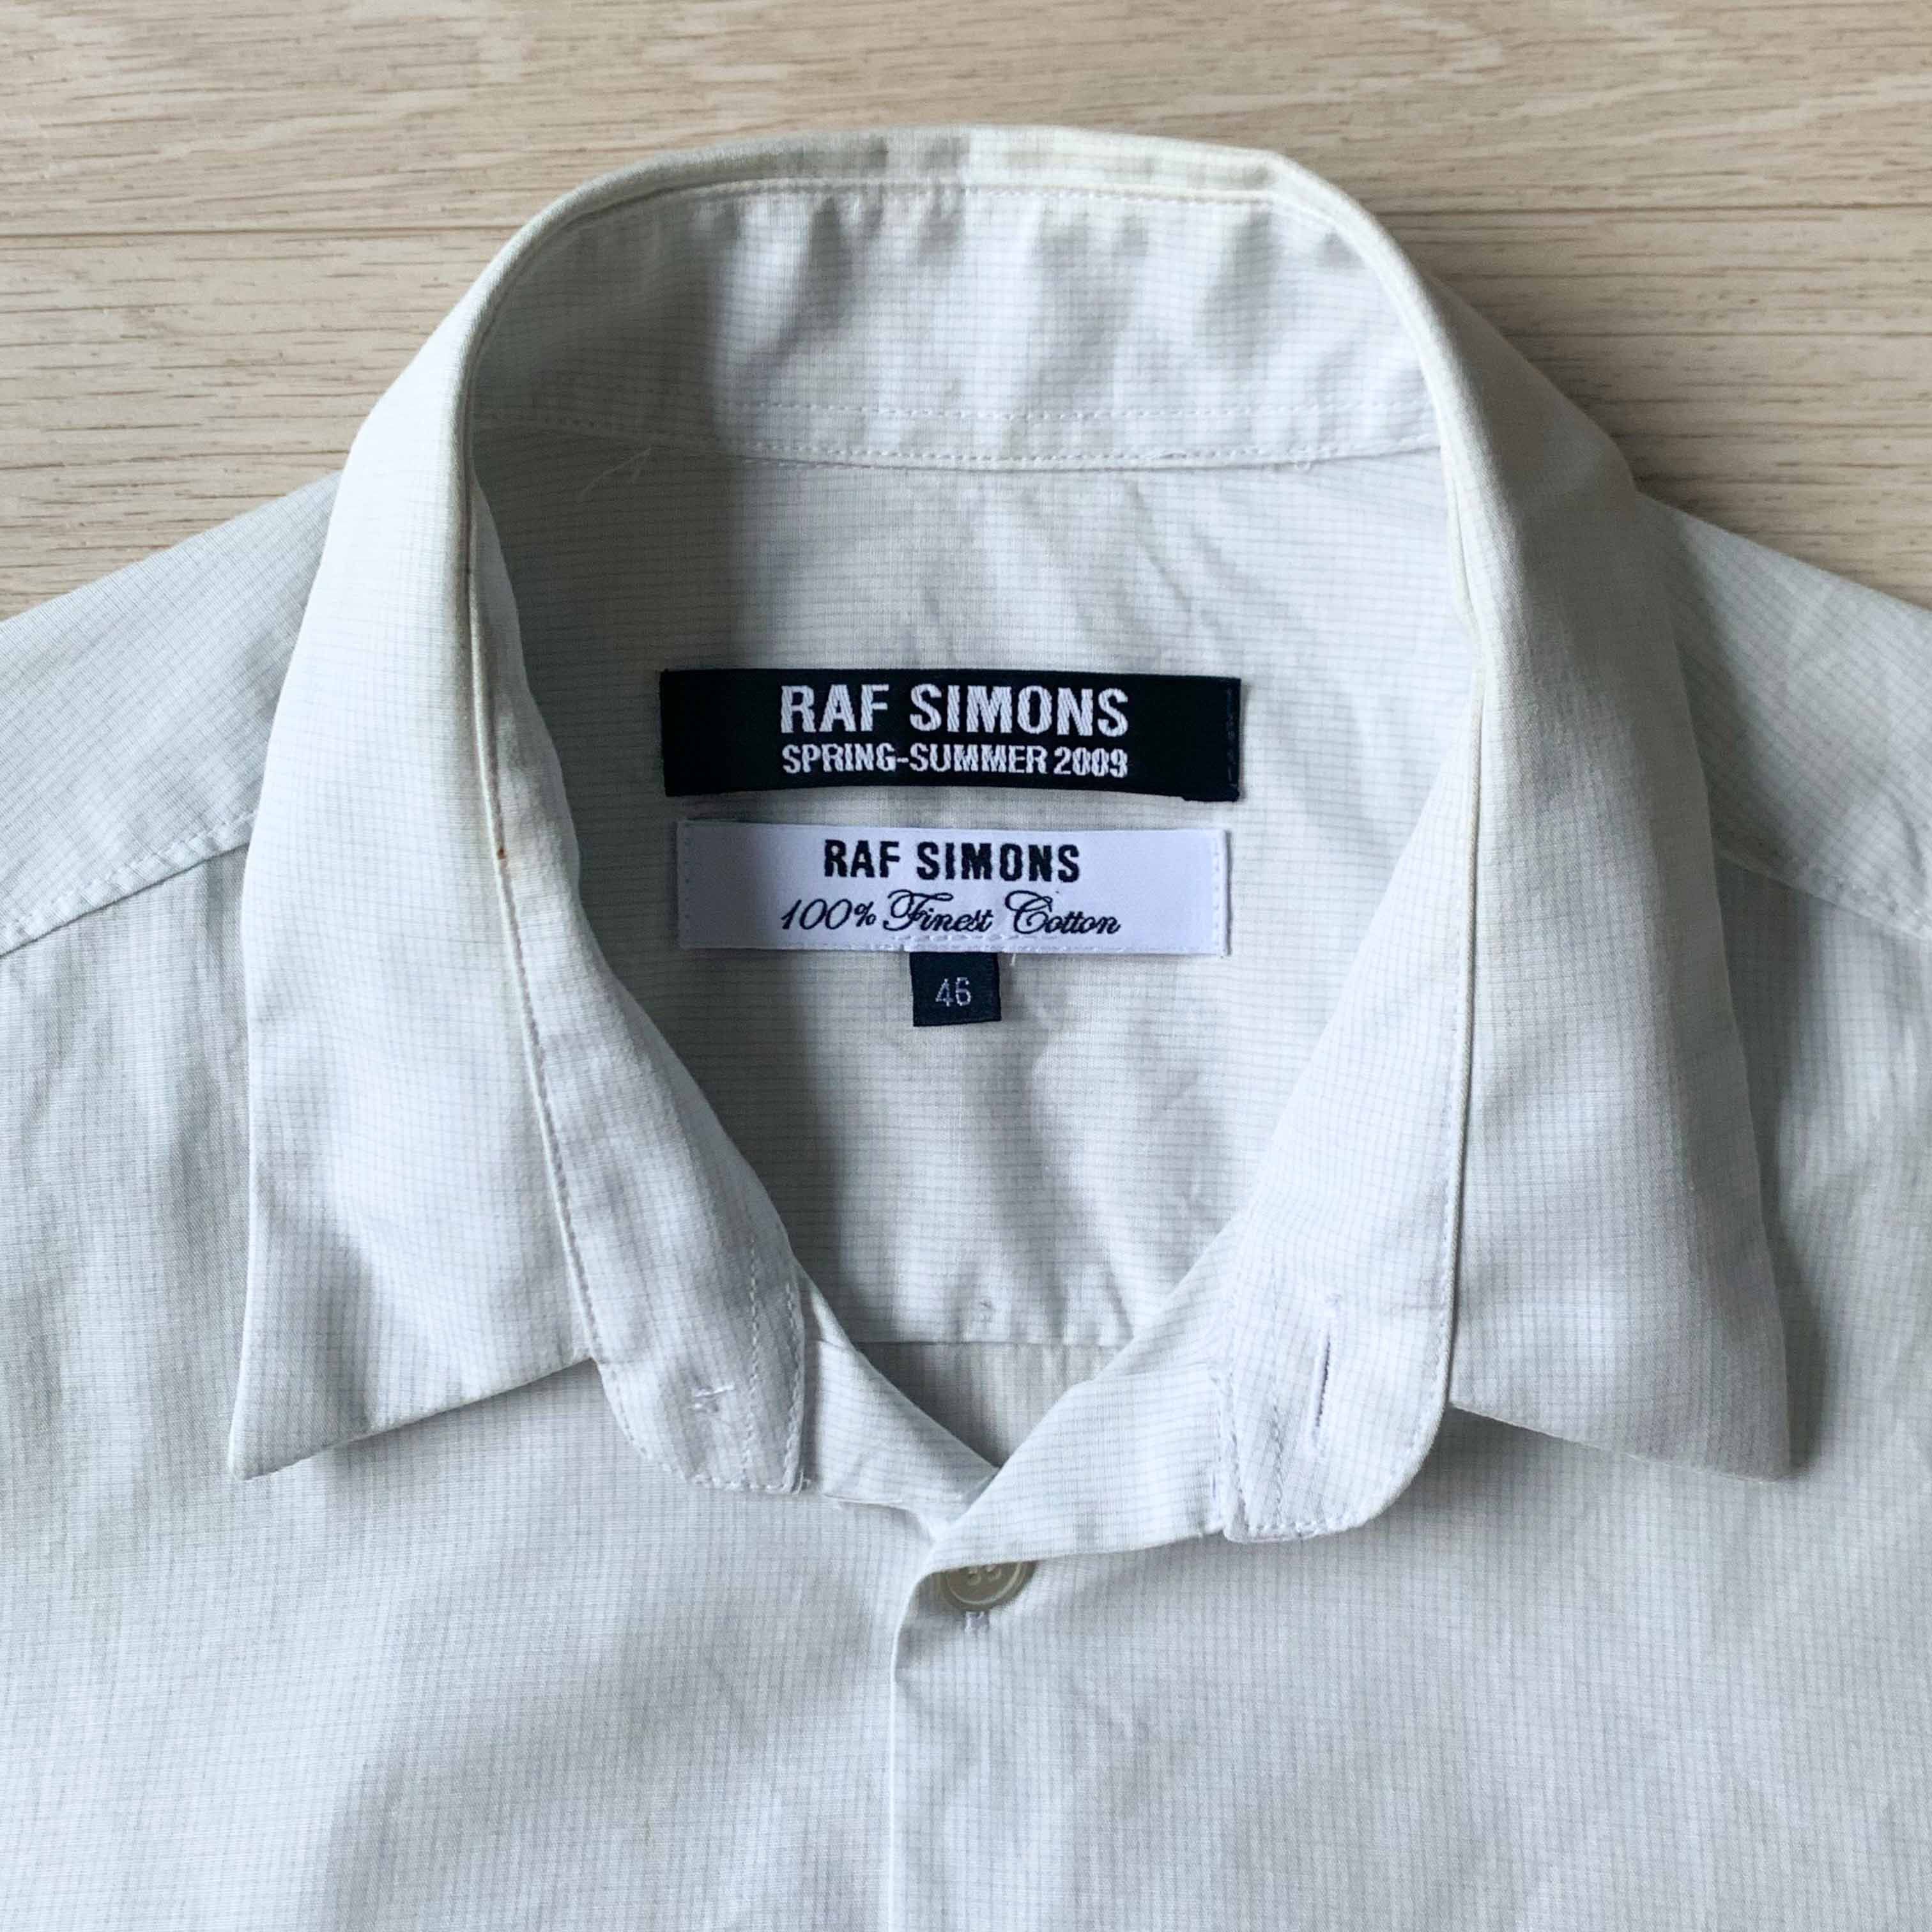 Raf Simons Raf Simons SS09 Sleeveless Shirts | Grailed